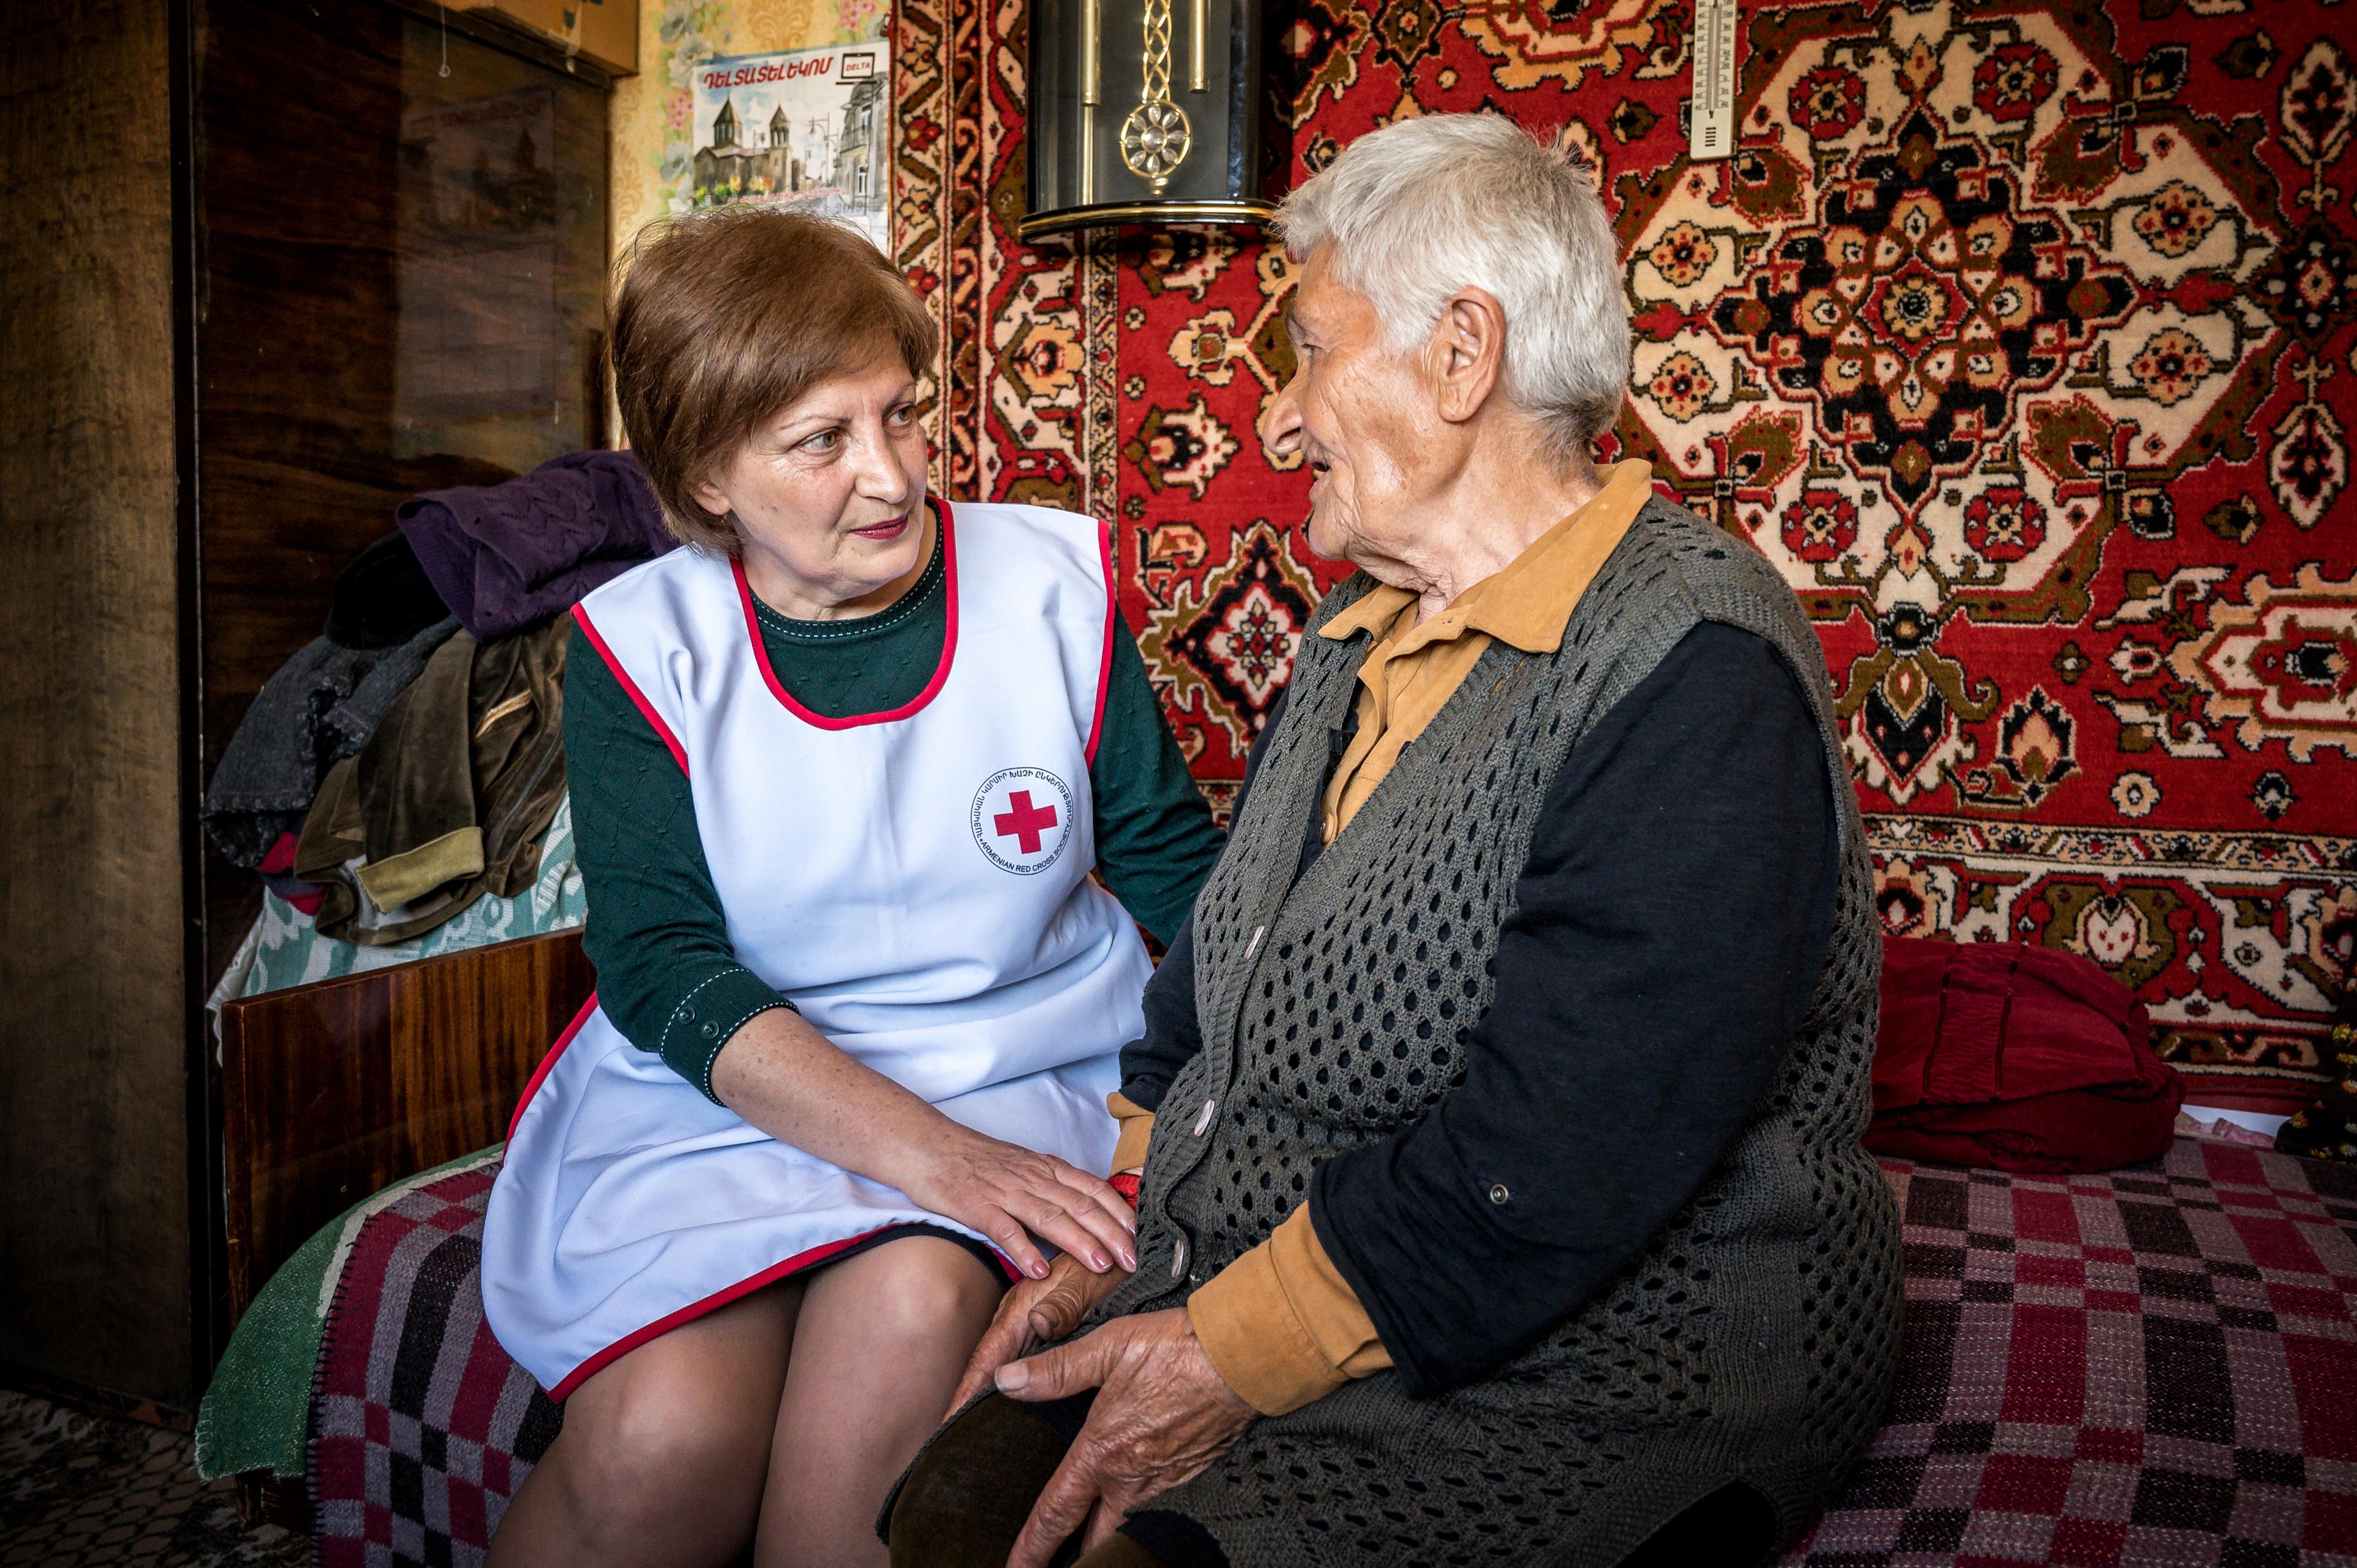 Eine Frau mit einer Rotkreuz-Weste sitzt gegenüber einer älteren Dame. Sie sitzen auf einem Bett und an der Wand hinter ihnen sind Teppiche aufgehängt.